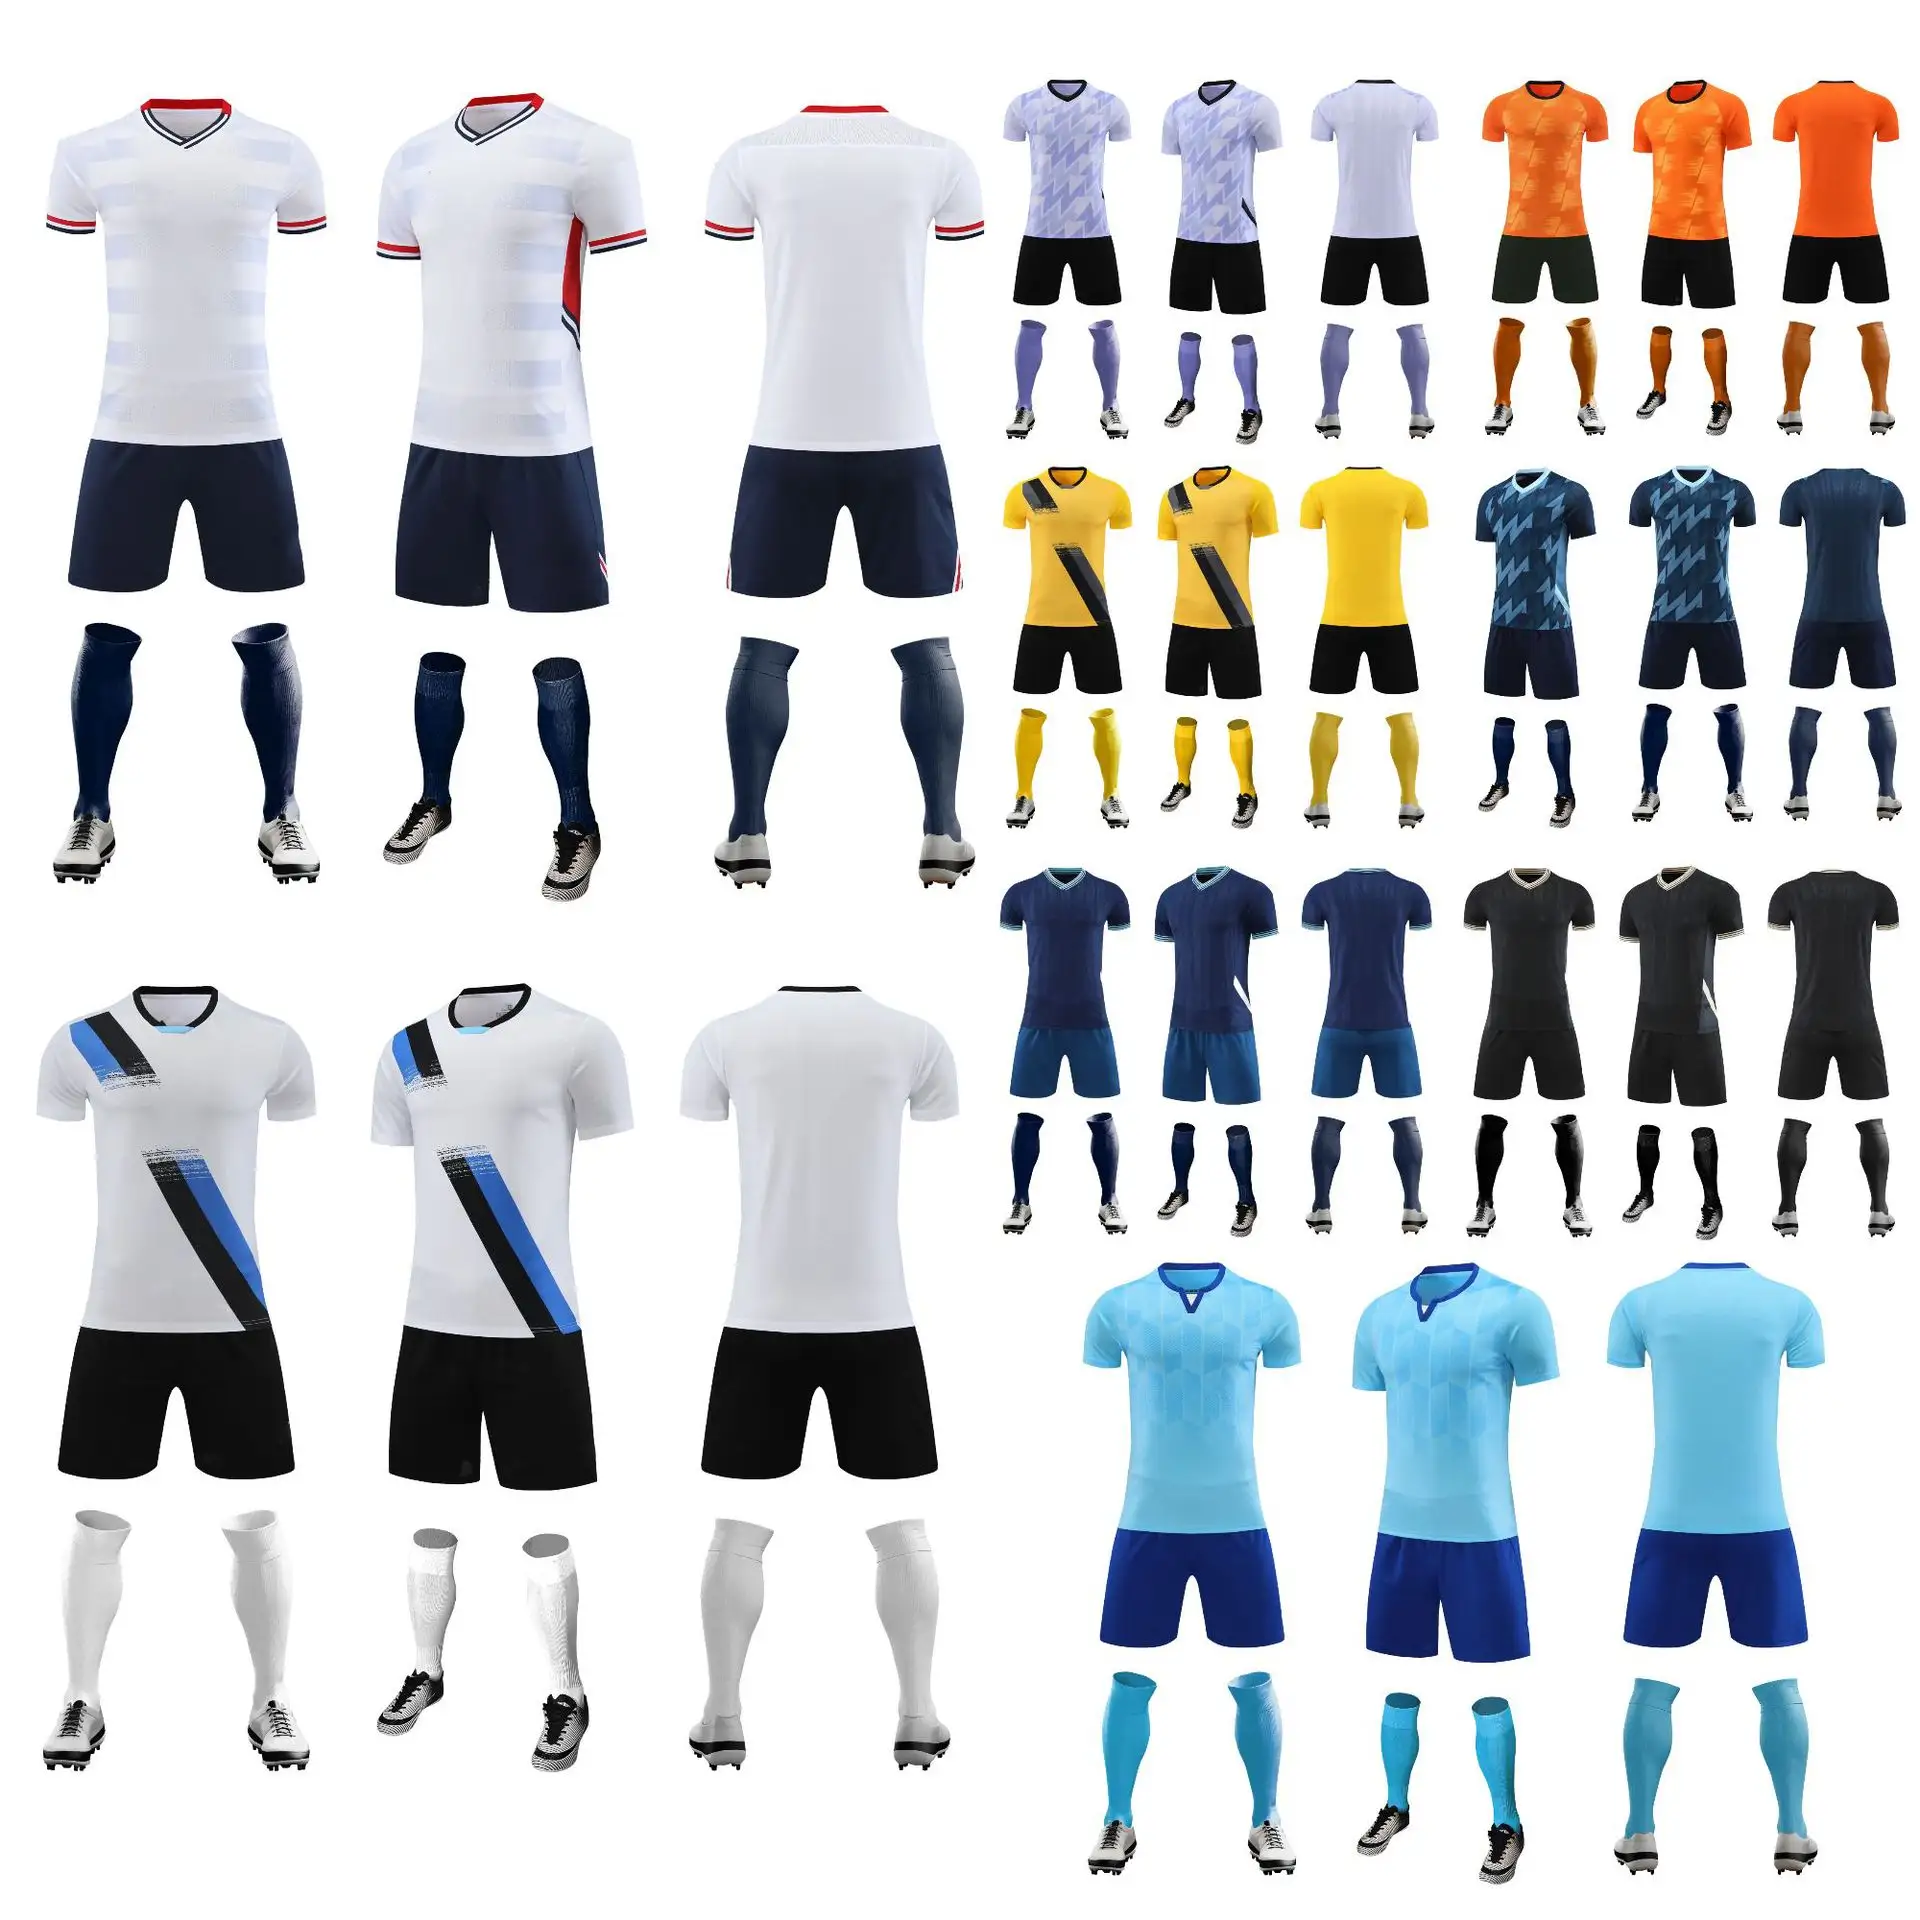 Melhor Site Para Camisas De Futebol Online Treinamento De Futebol Uniforme Roupas Cheap Blank Football Jersey soccer wear